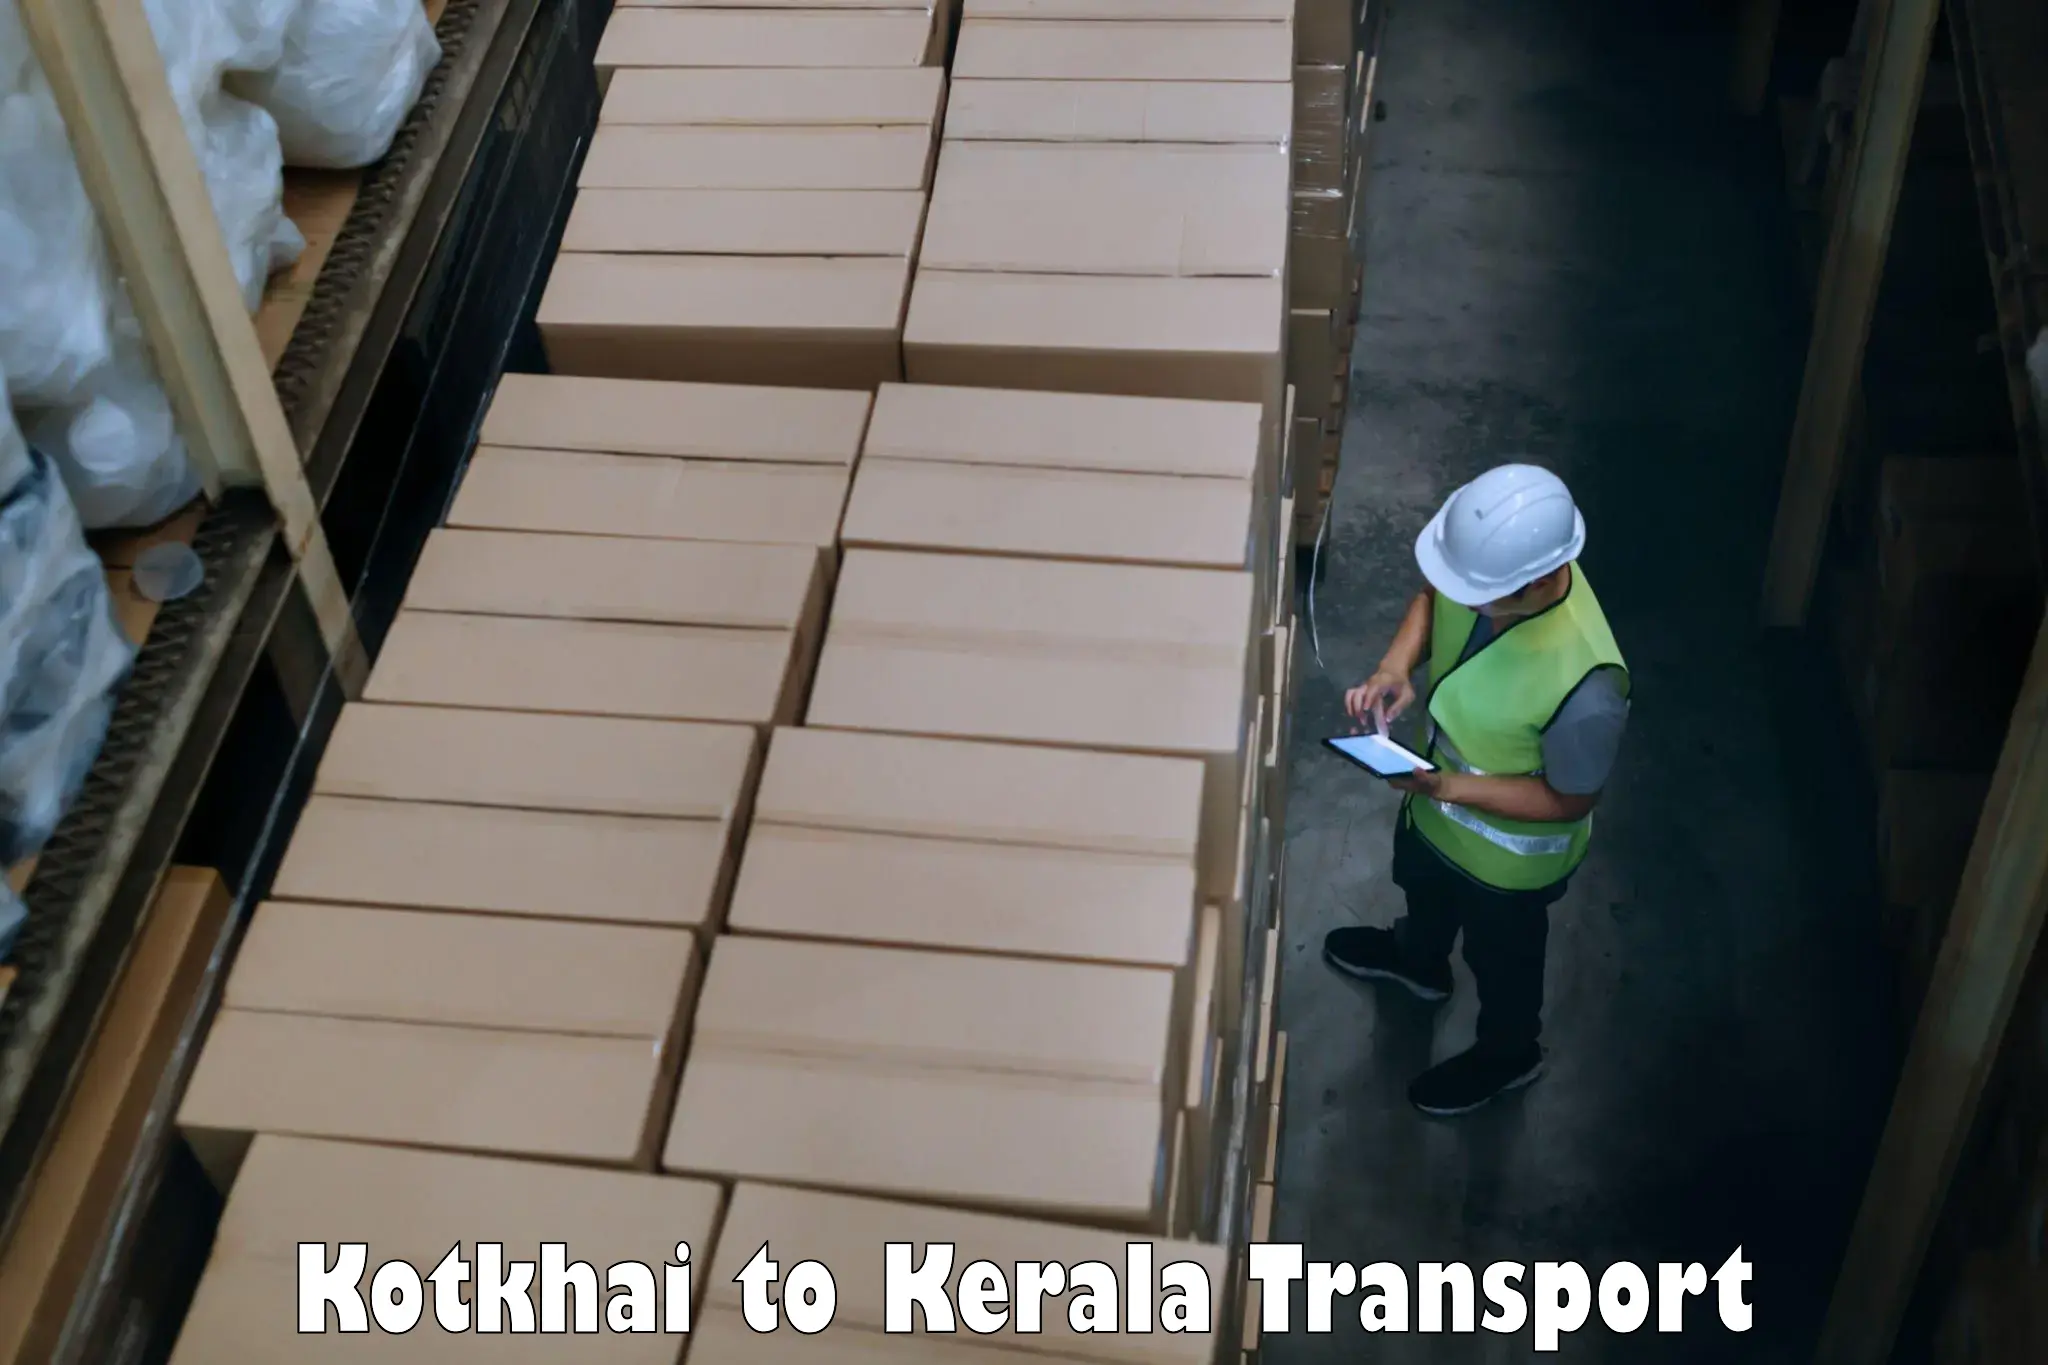 Nearby transport service Kotkhai to Mahatma Gandhi University Kottayam